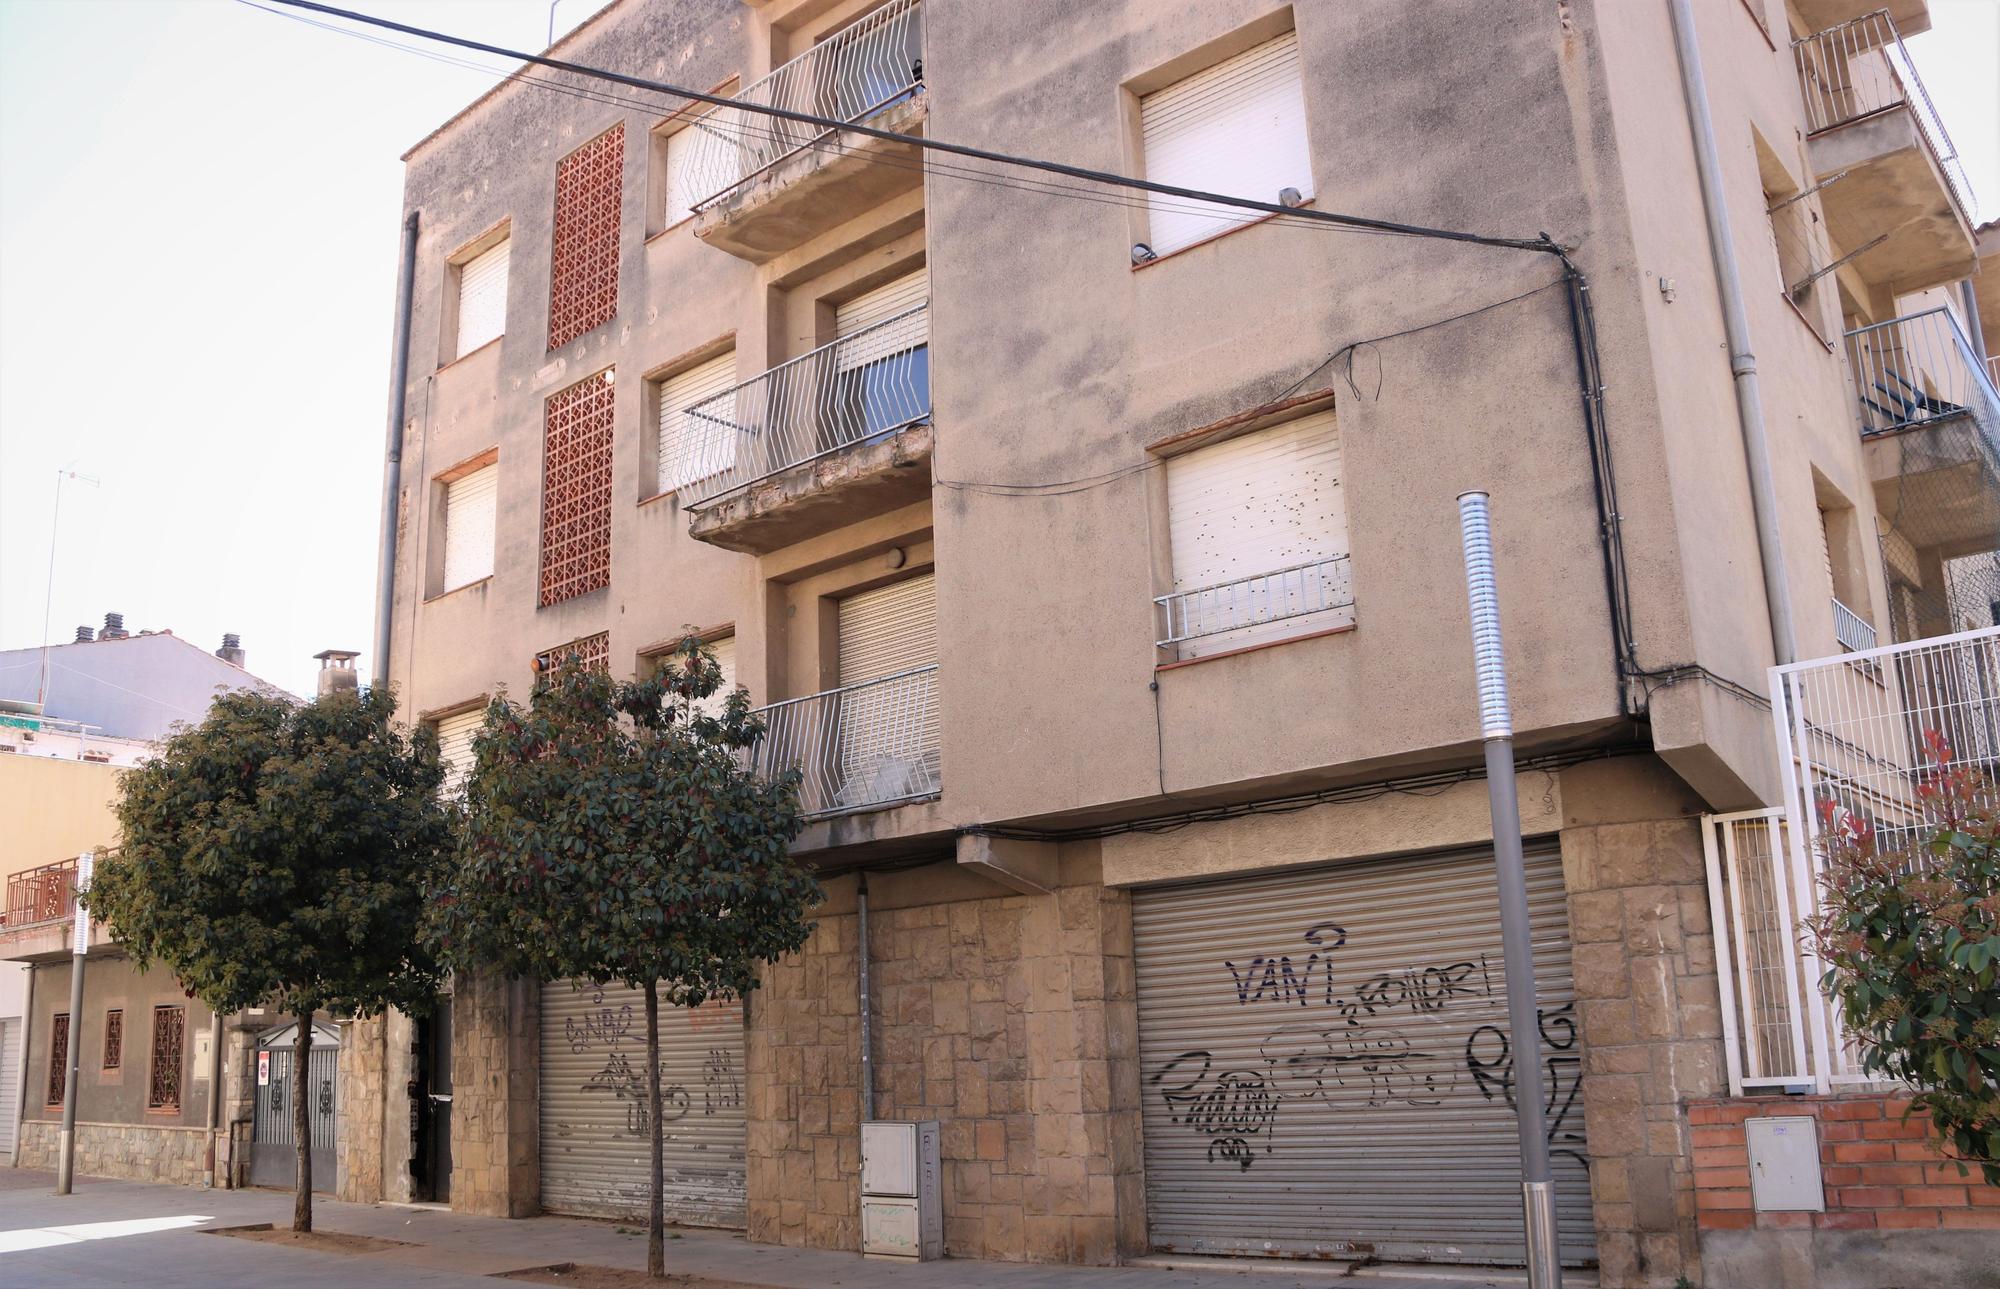 El bloque que se transformará en vivienda cooperativa en Mollet del Vallès.